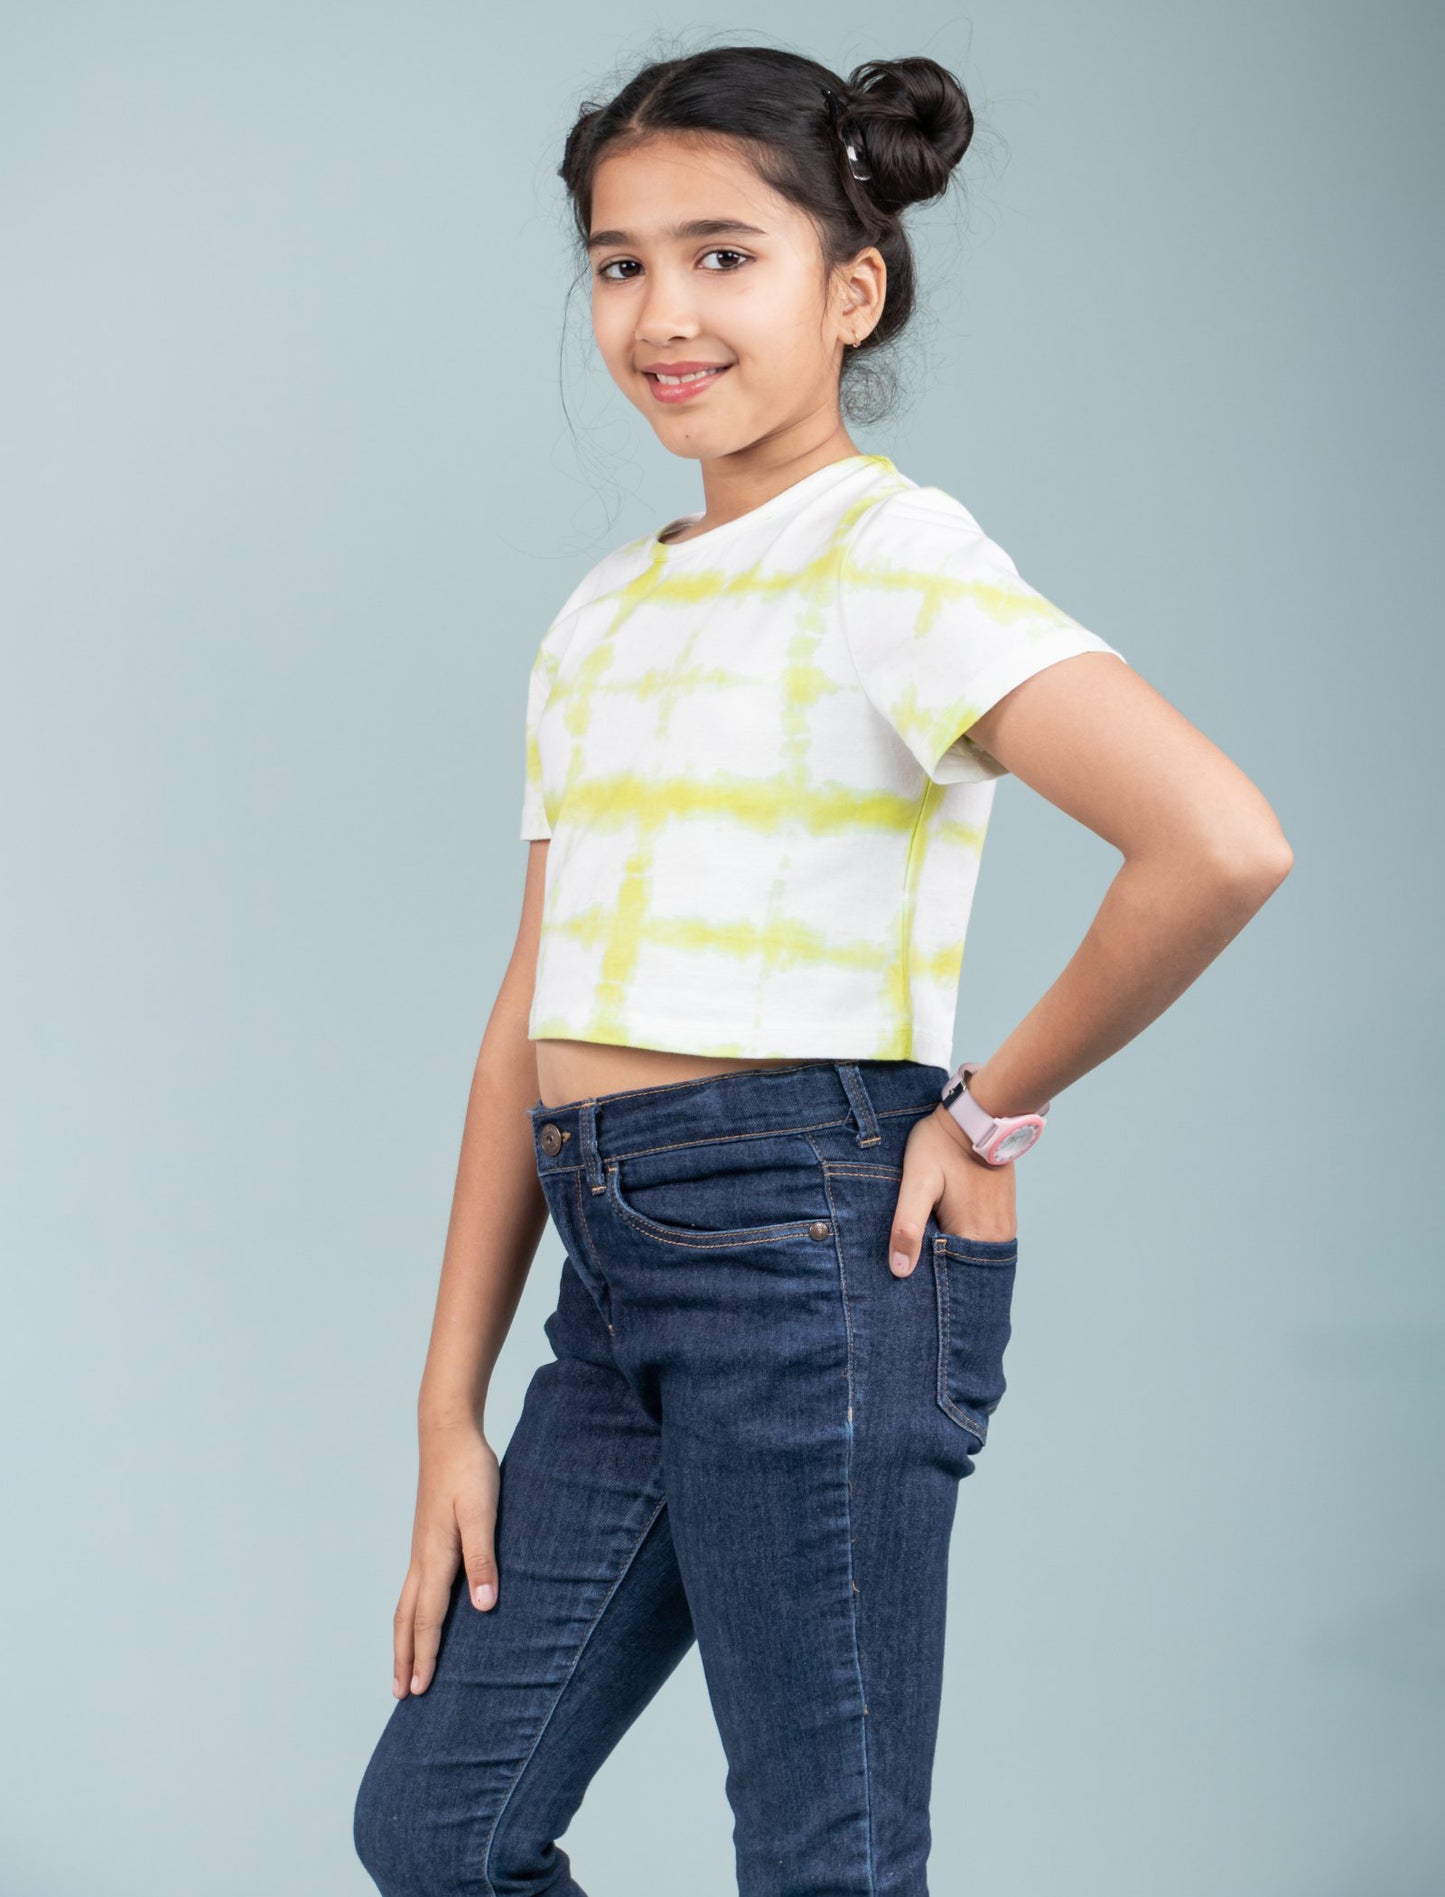 Girls Kids Tie-Dye Cotton Summer Crop Top T-Shirt (Lime Green)